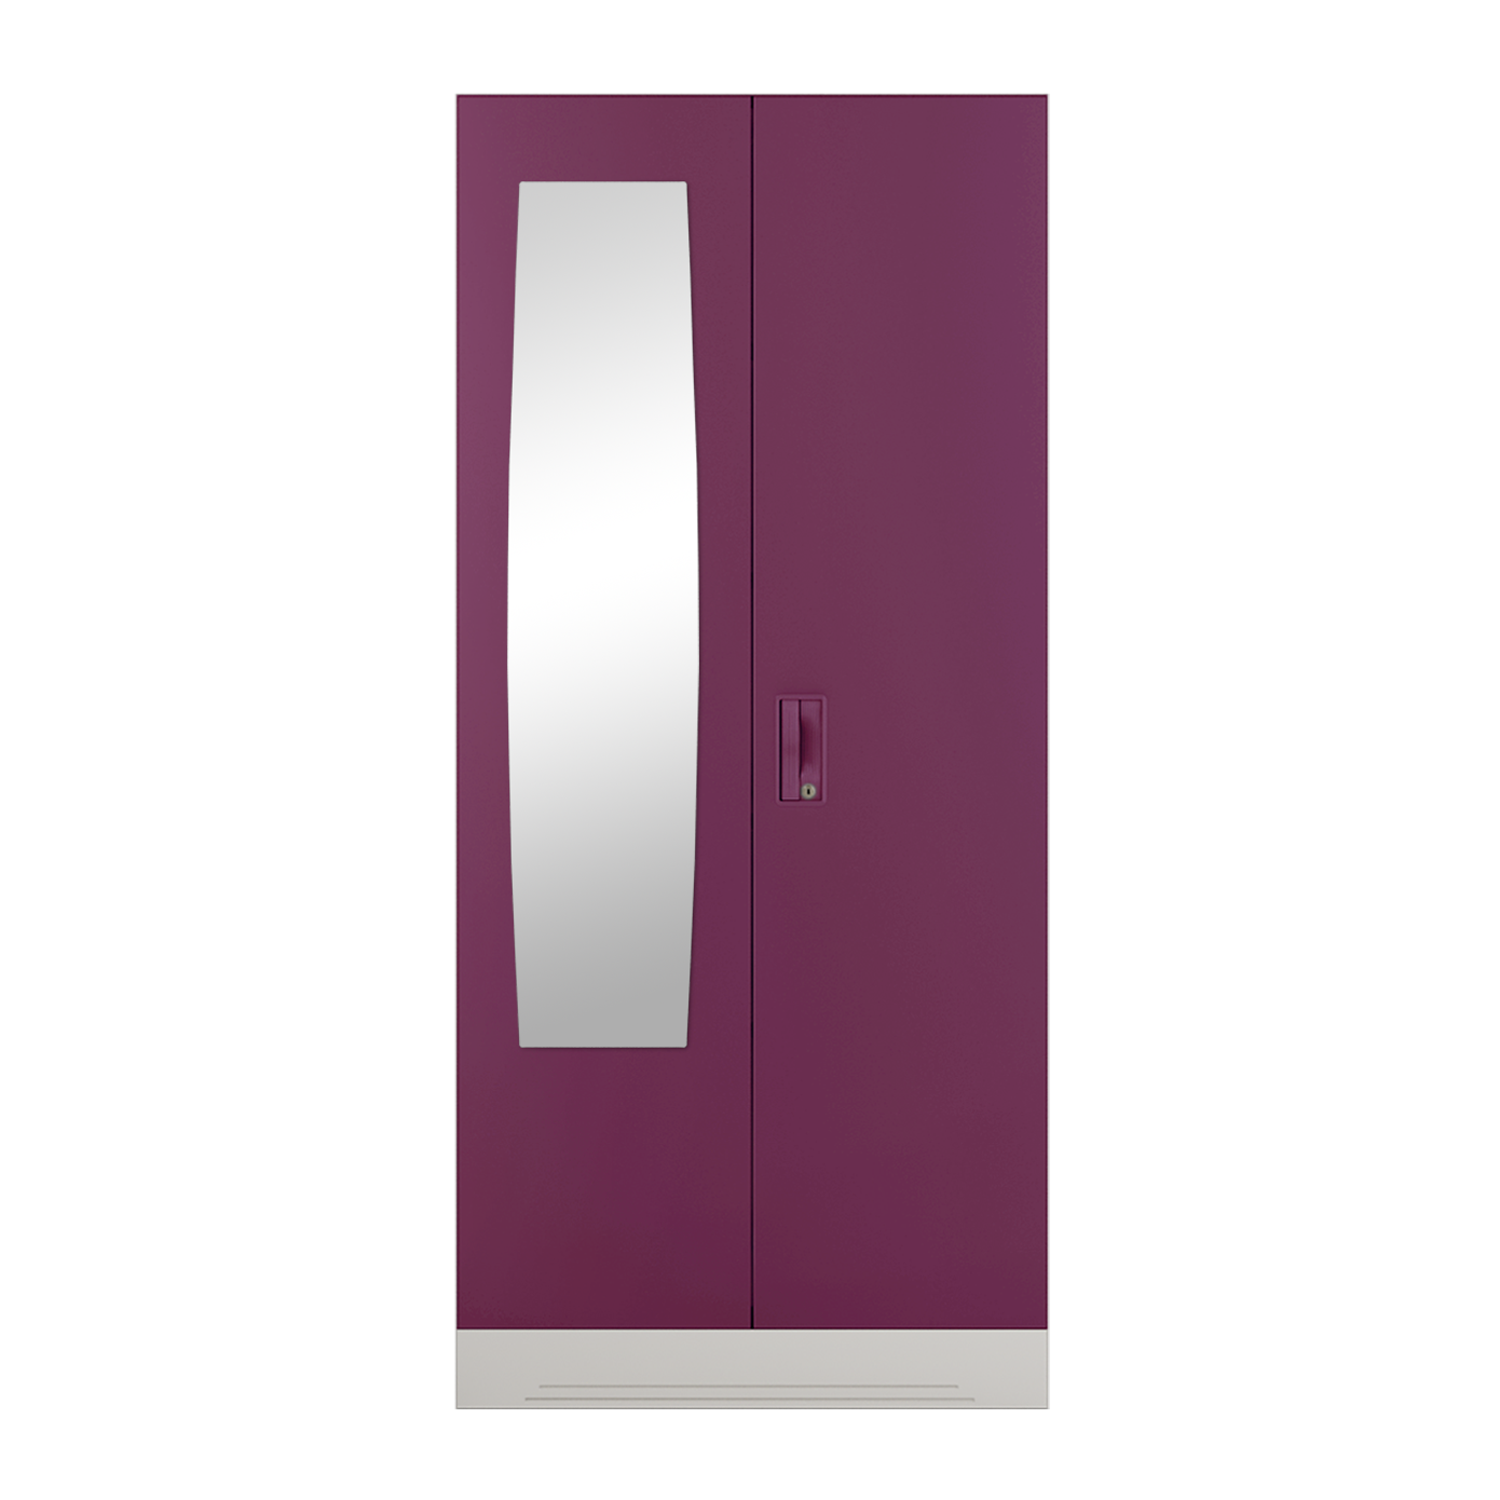 Buy Slimline 2 Door Steel Almirah (2 Shelves & Mirror) in Purple